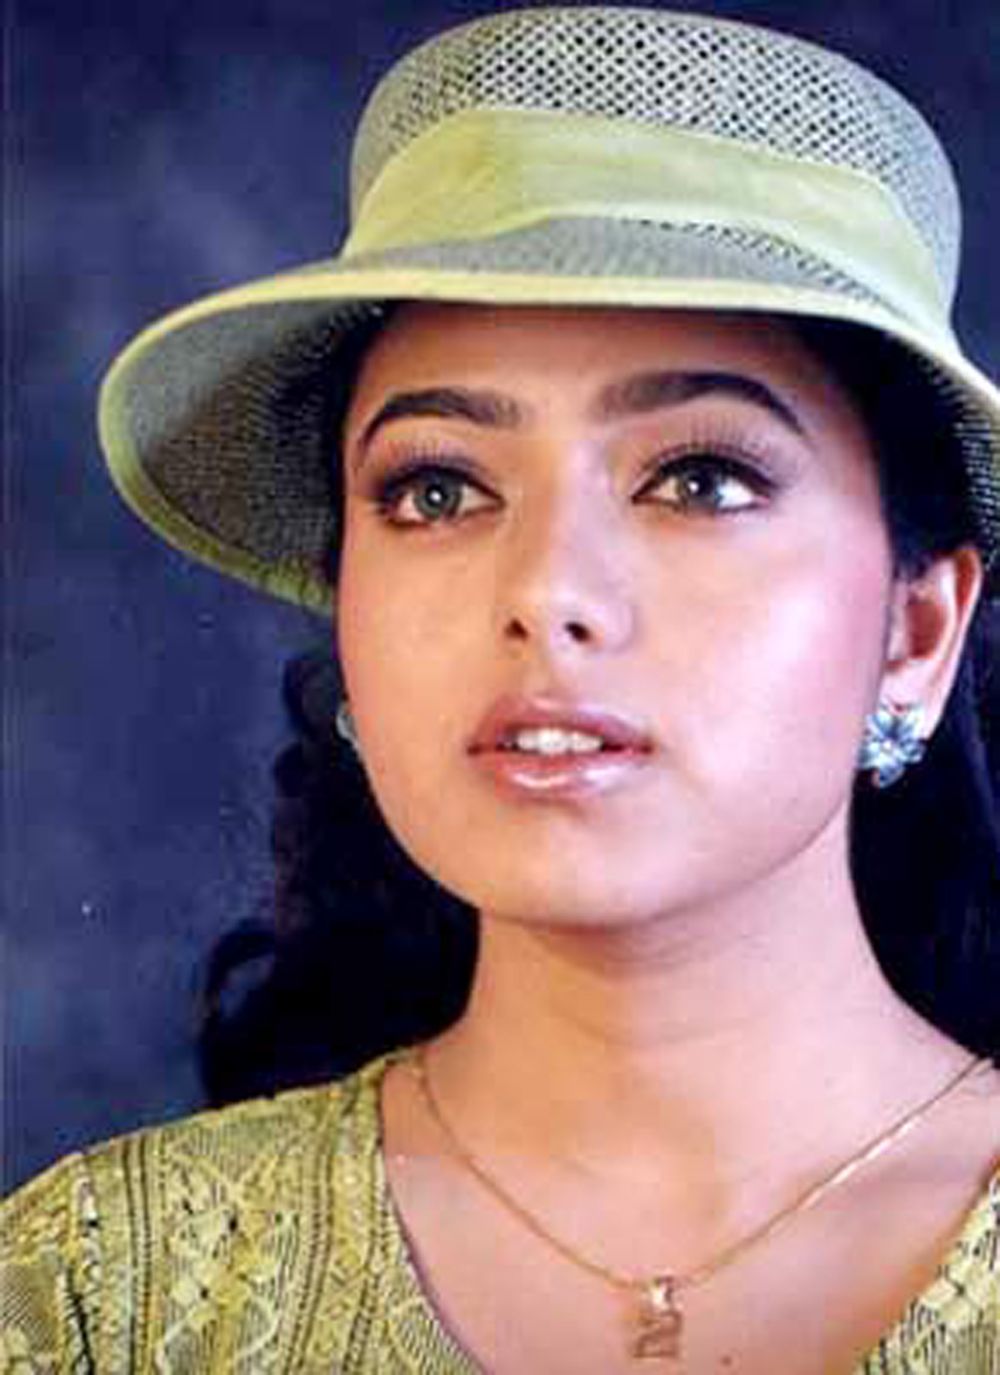 Actress Soundarya Photos